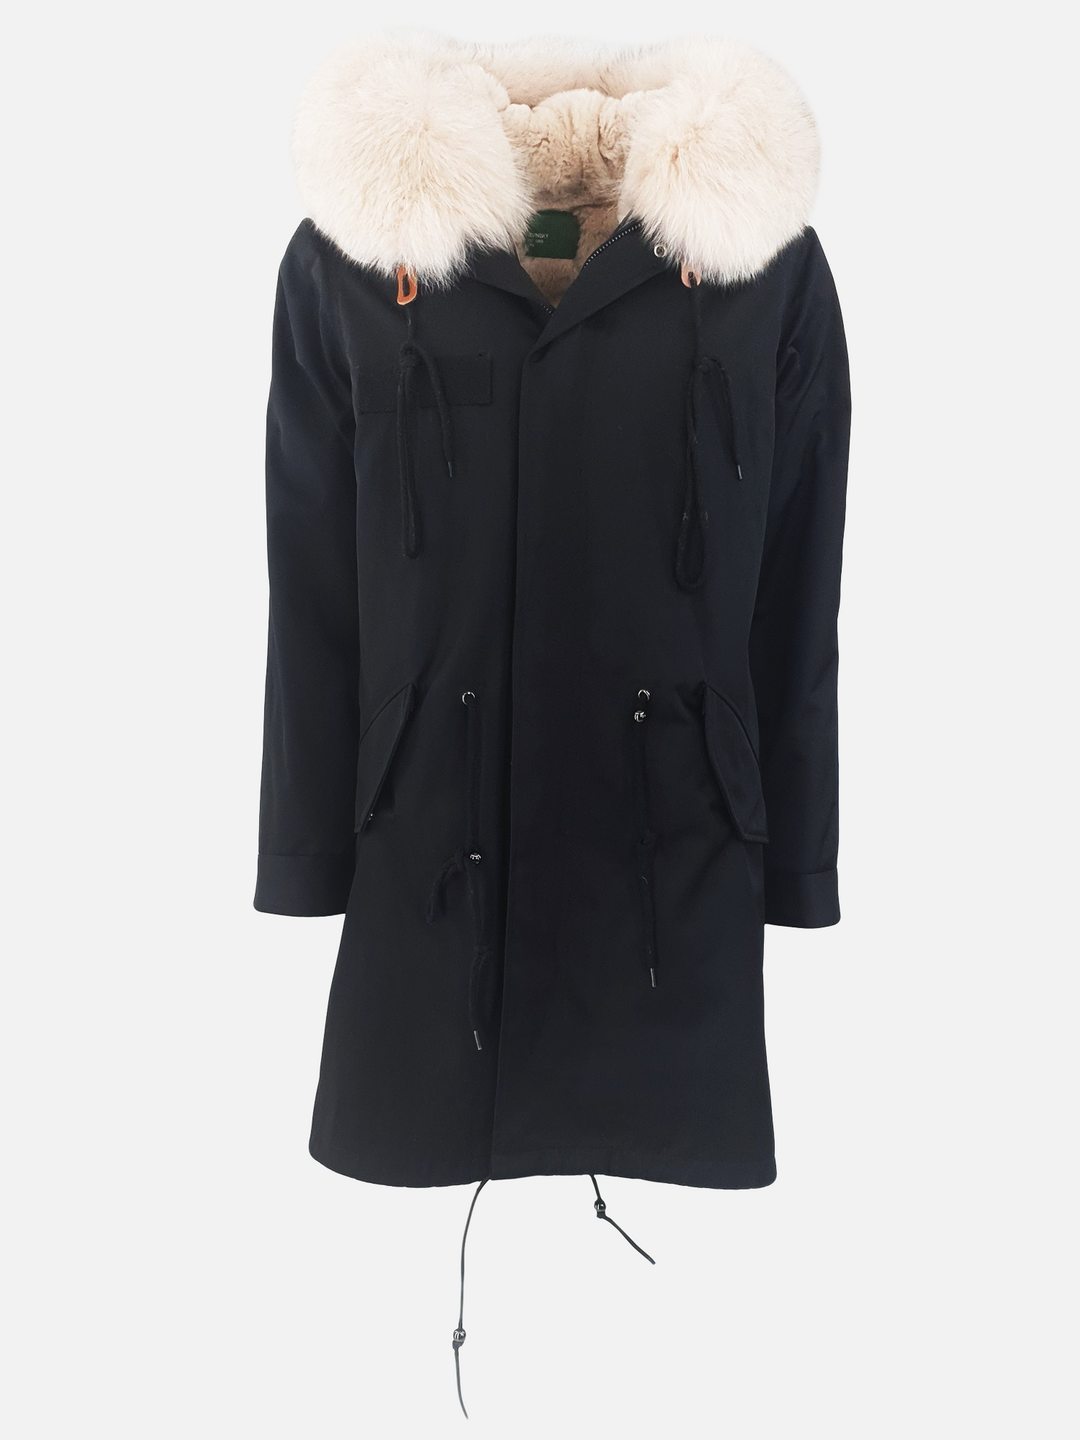 K1685, 95 cm. sort dame parka frakke